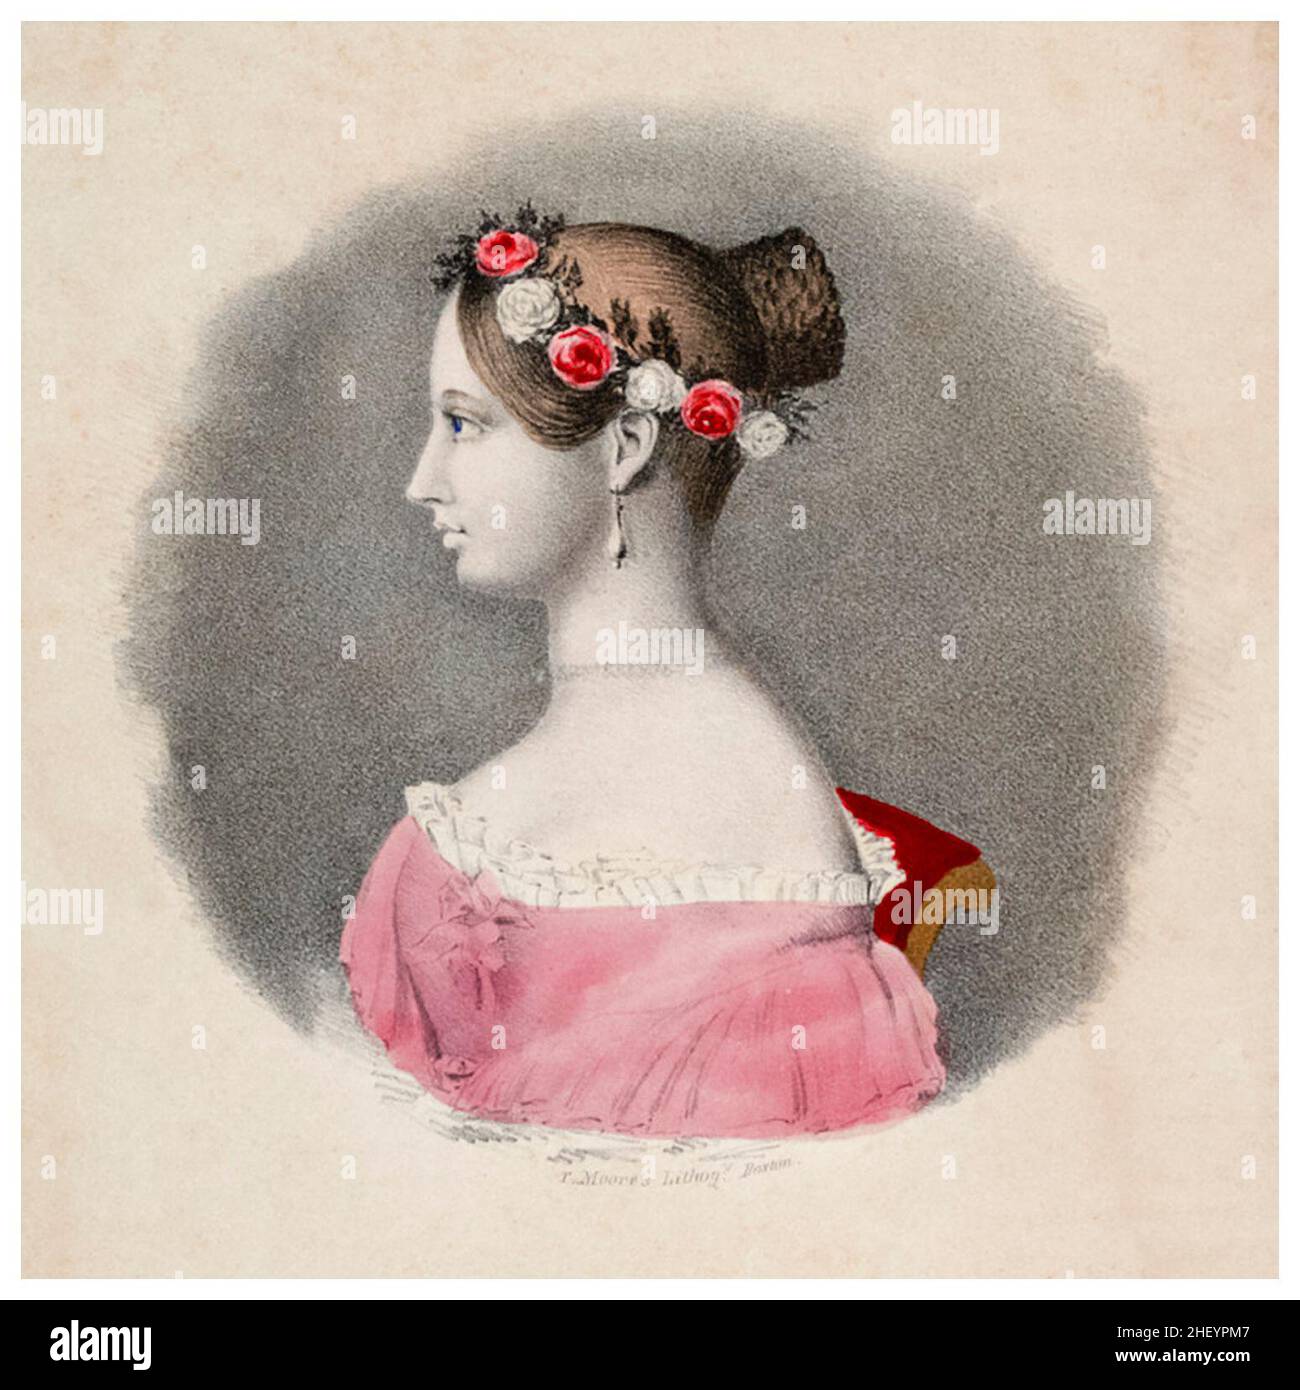 La reine Victoria de Grande-Bretagne et du Royaume-Uni (1819-1901) en tant que jeune femme, portrait de profil dessiné par Thomas Moore, vers 1840 Banque D'Images